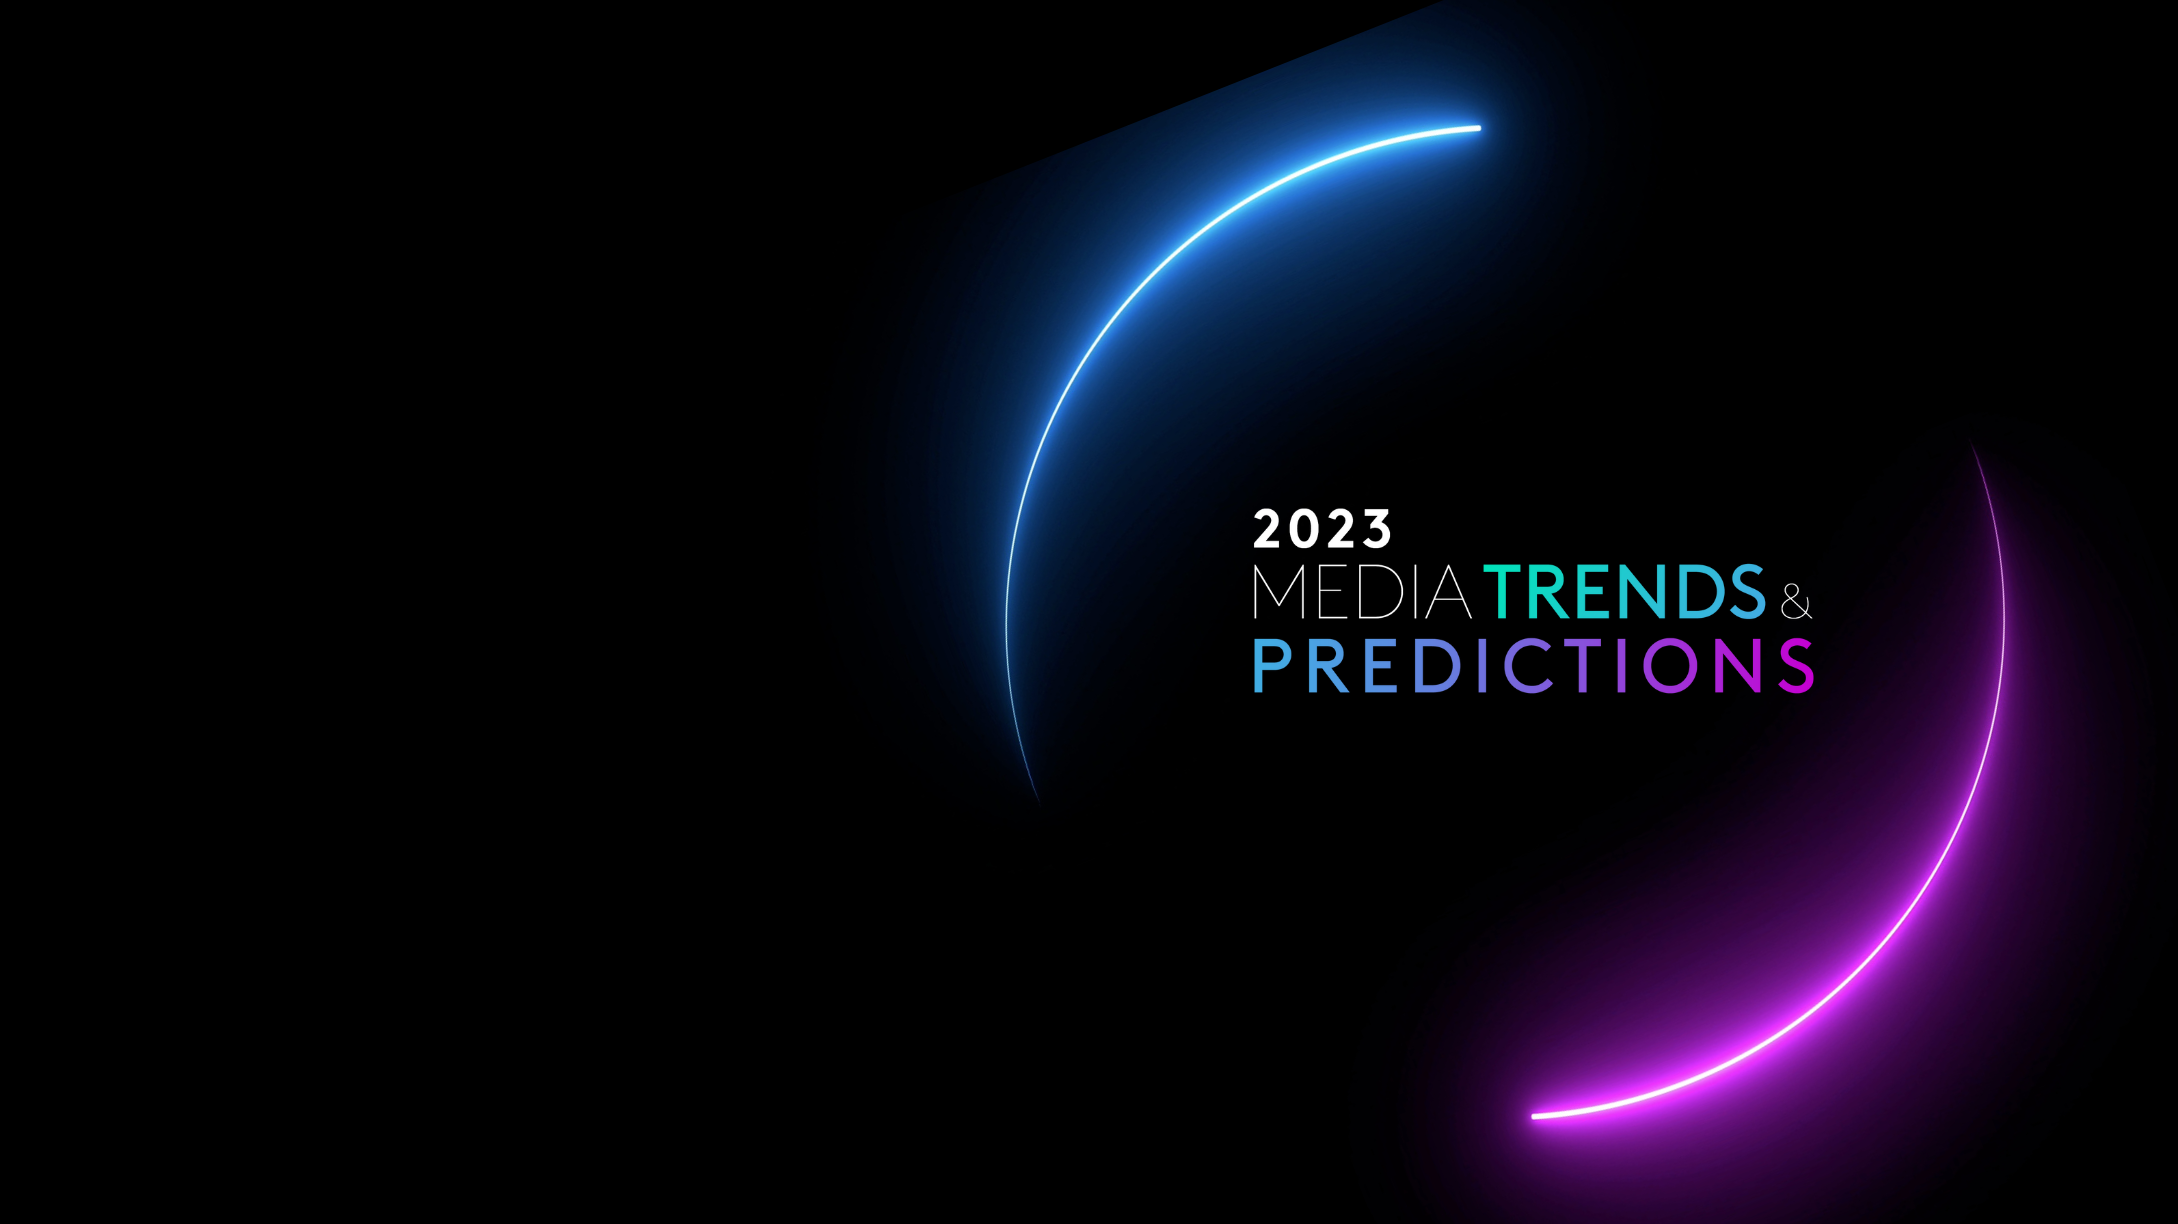 Media Trends & Predictions 2023 von Kantar